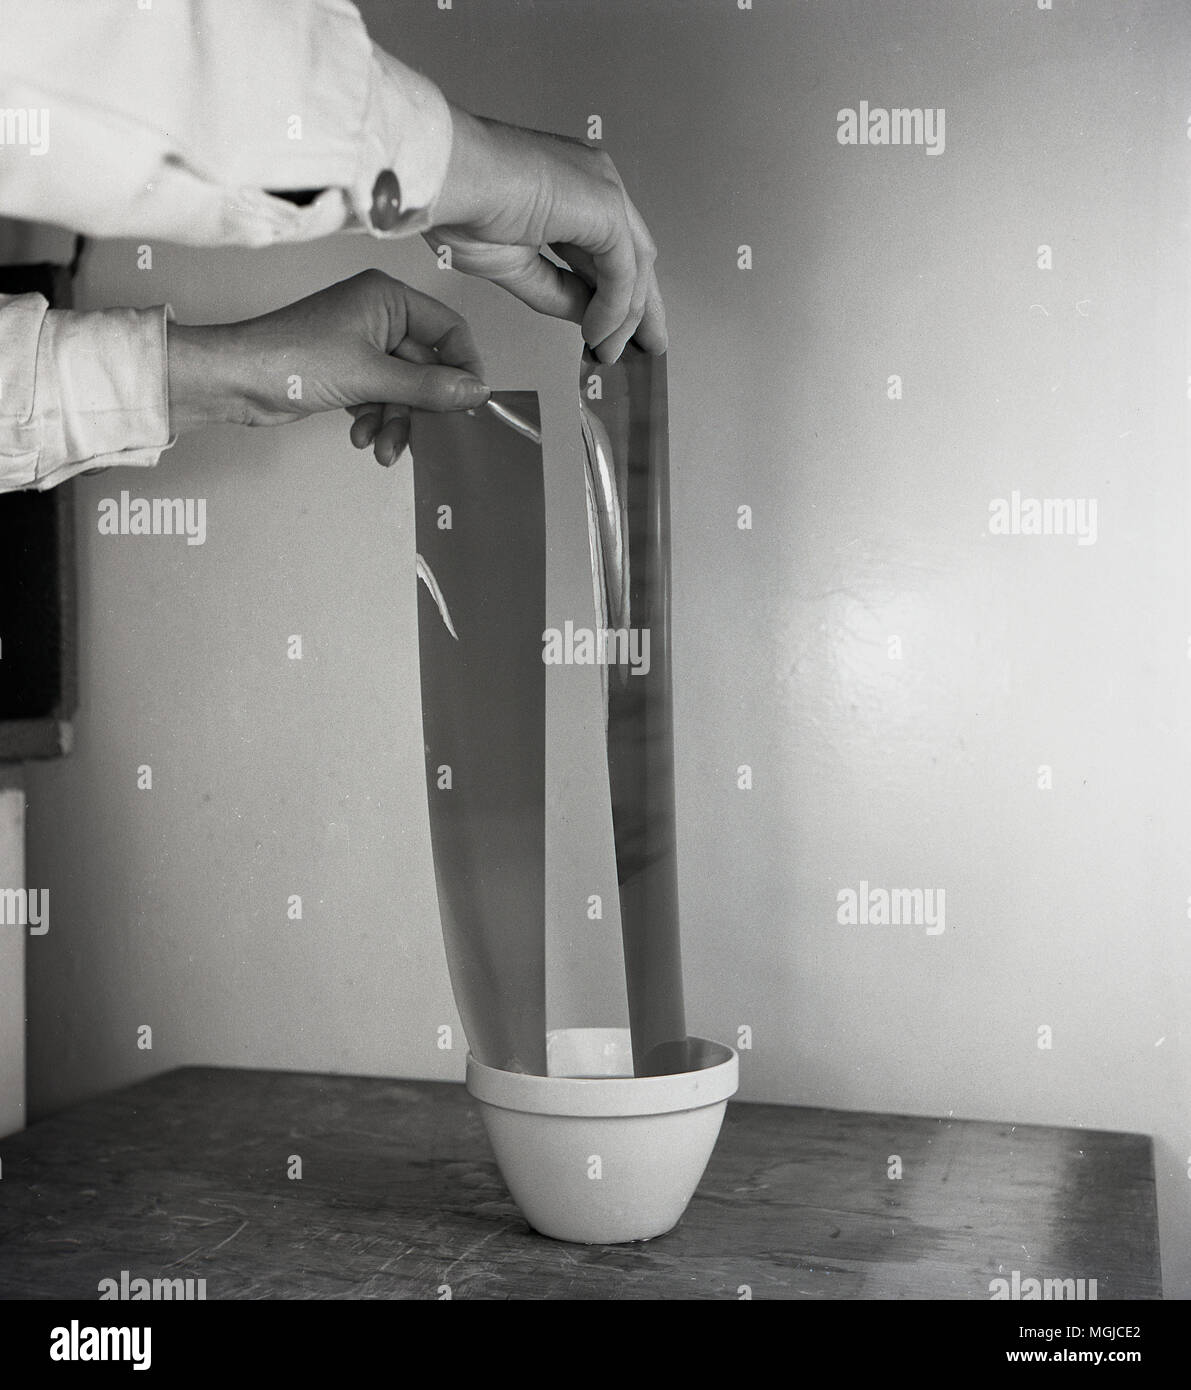 1950, foto histórica muestra el rollo de película negativa antes de ser desarrollado. Aquí la película está empapada en agua para engrosar la capa de gelatina, facilitando la acción subsiguiente de los tratamientos químicos. Foto de stock